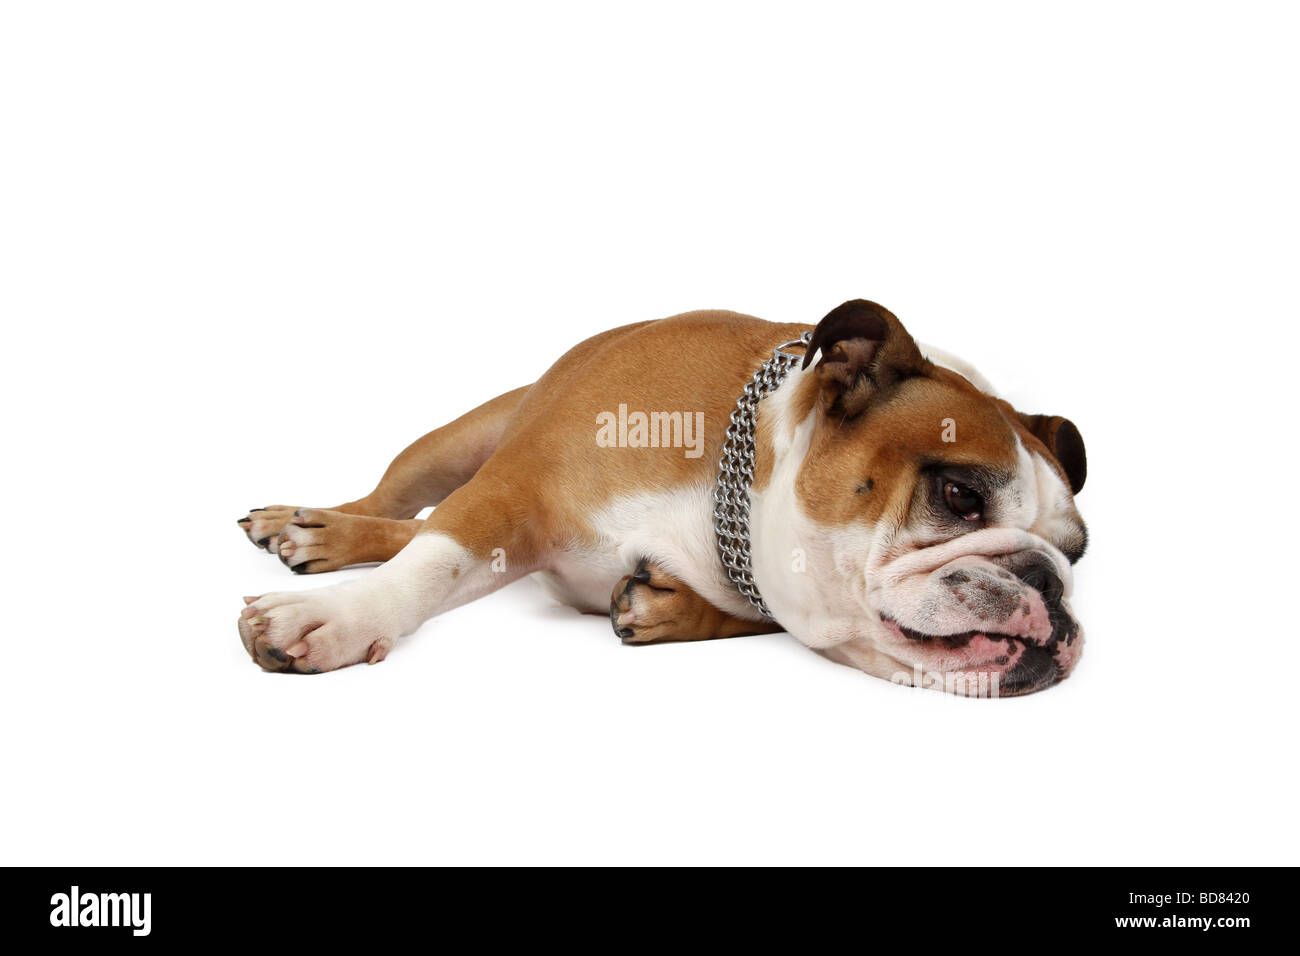 English bulldog (Canis lupus f. familiaris), lying on floor Stock Photo